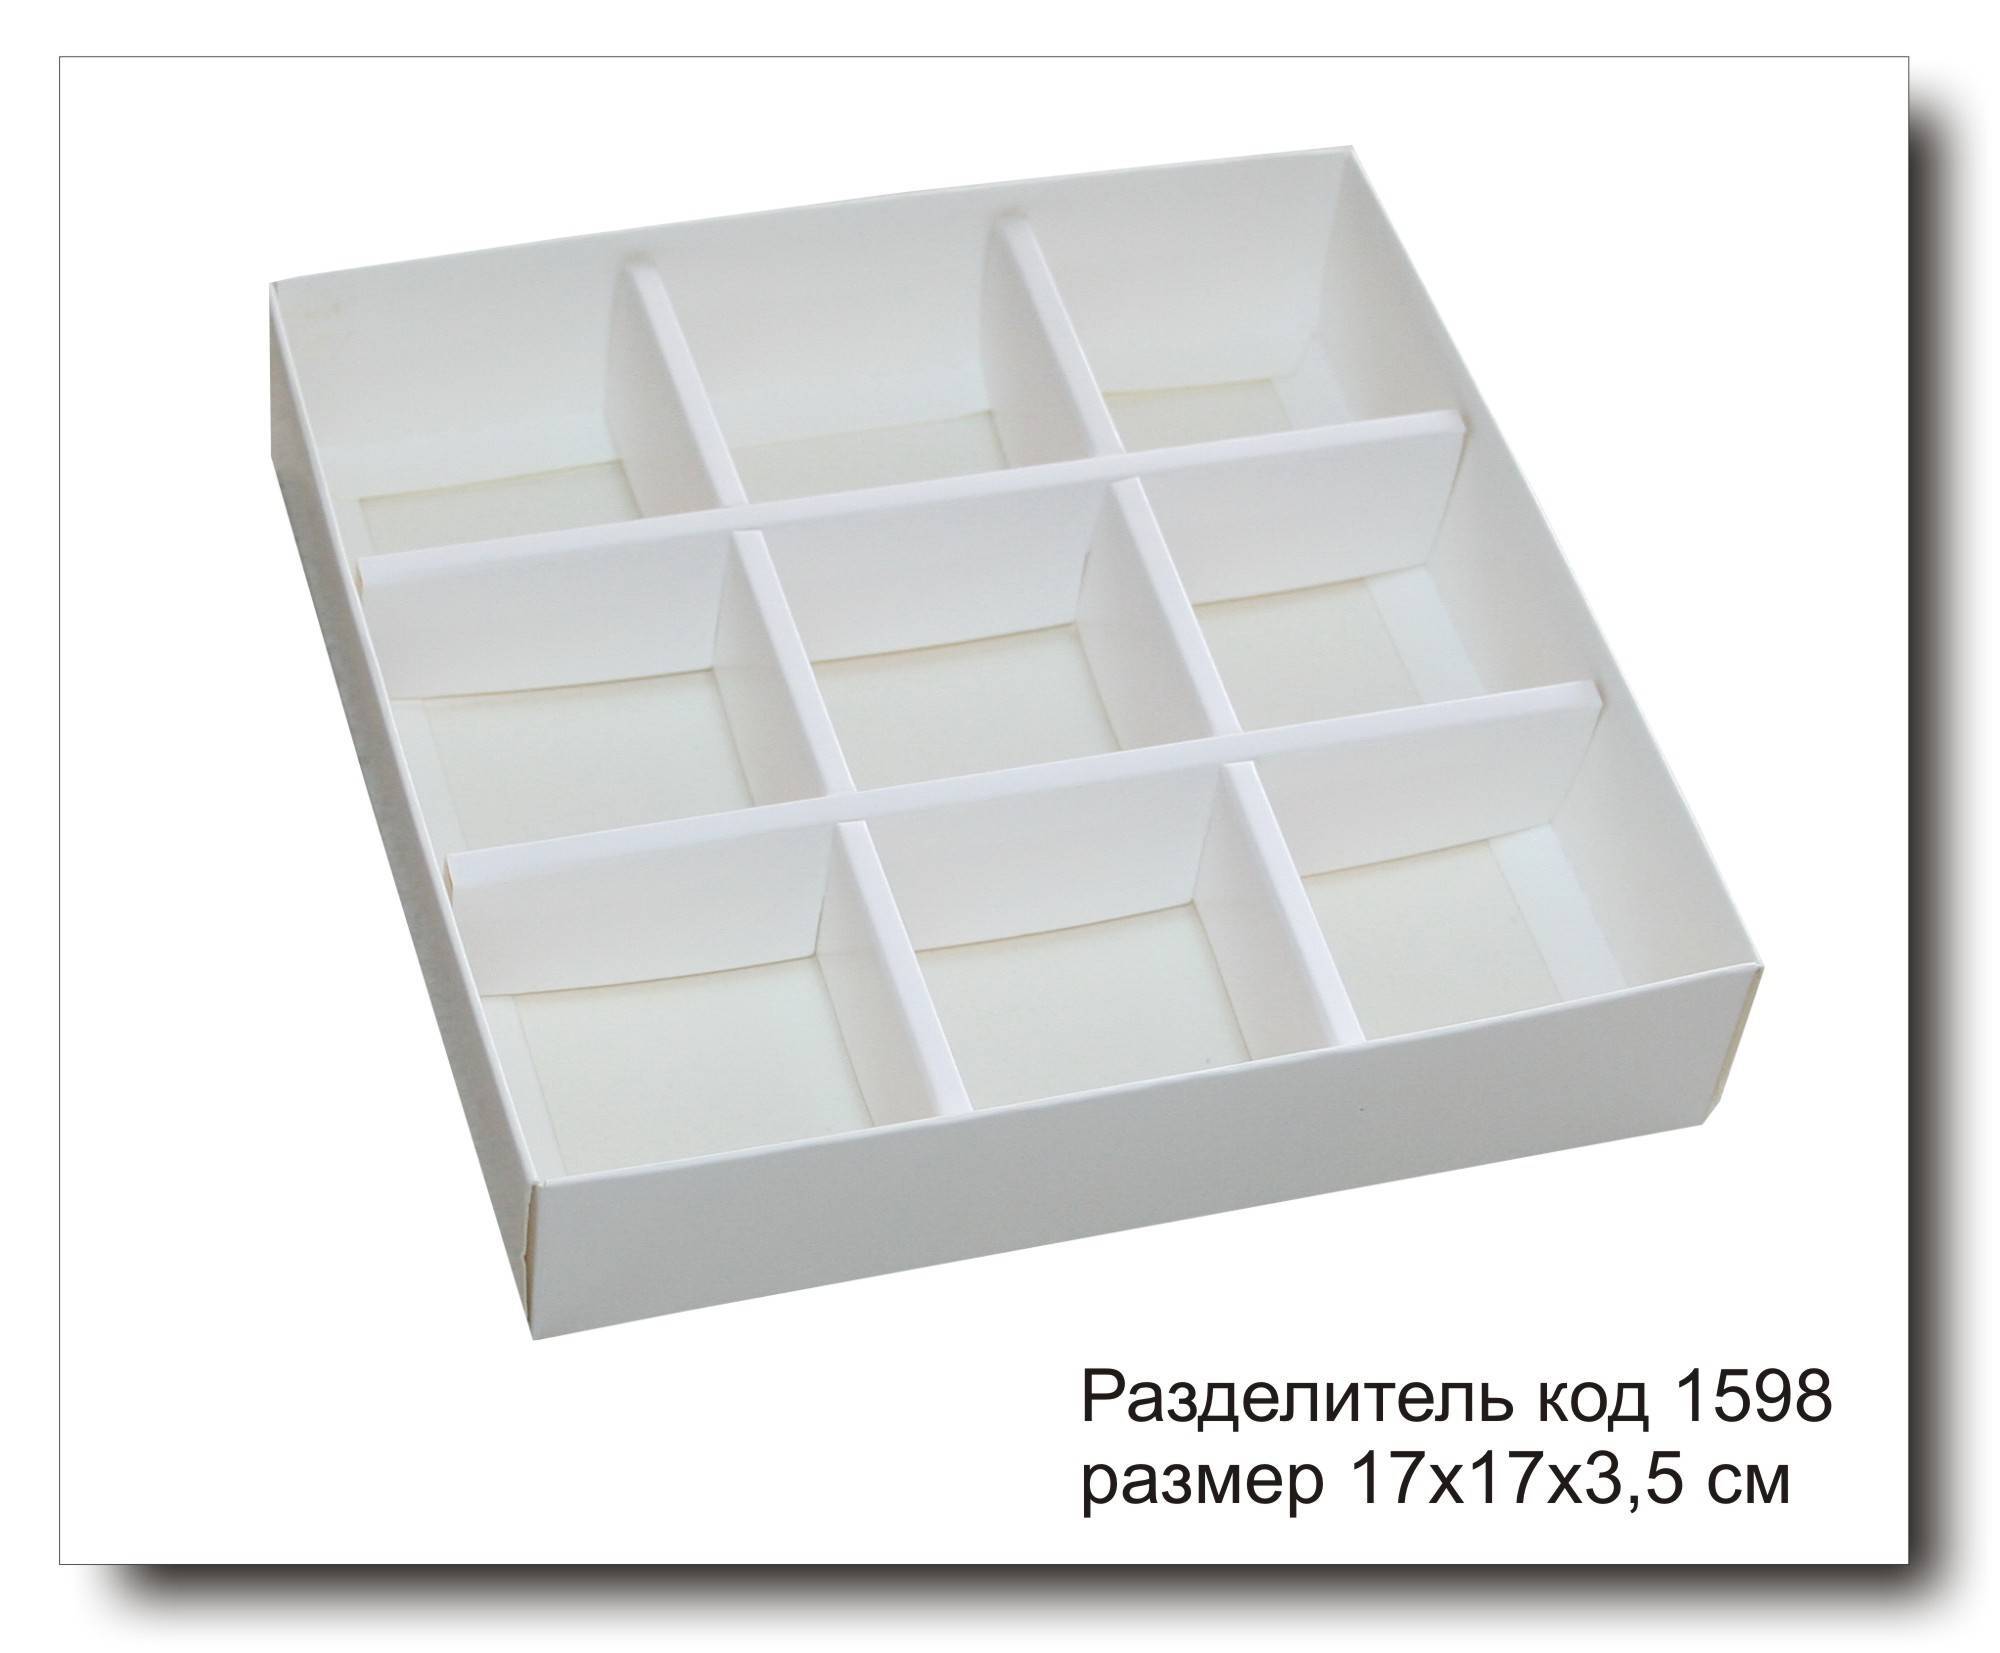 Съемные разделители для коробки OSKAR A4, купить в Москве по доступной цене - Порядочный магазин